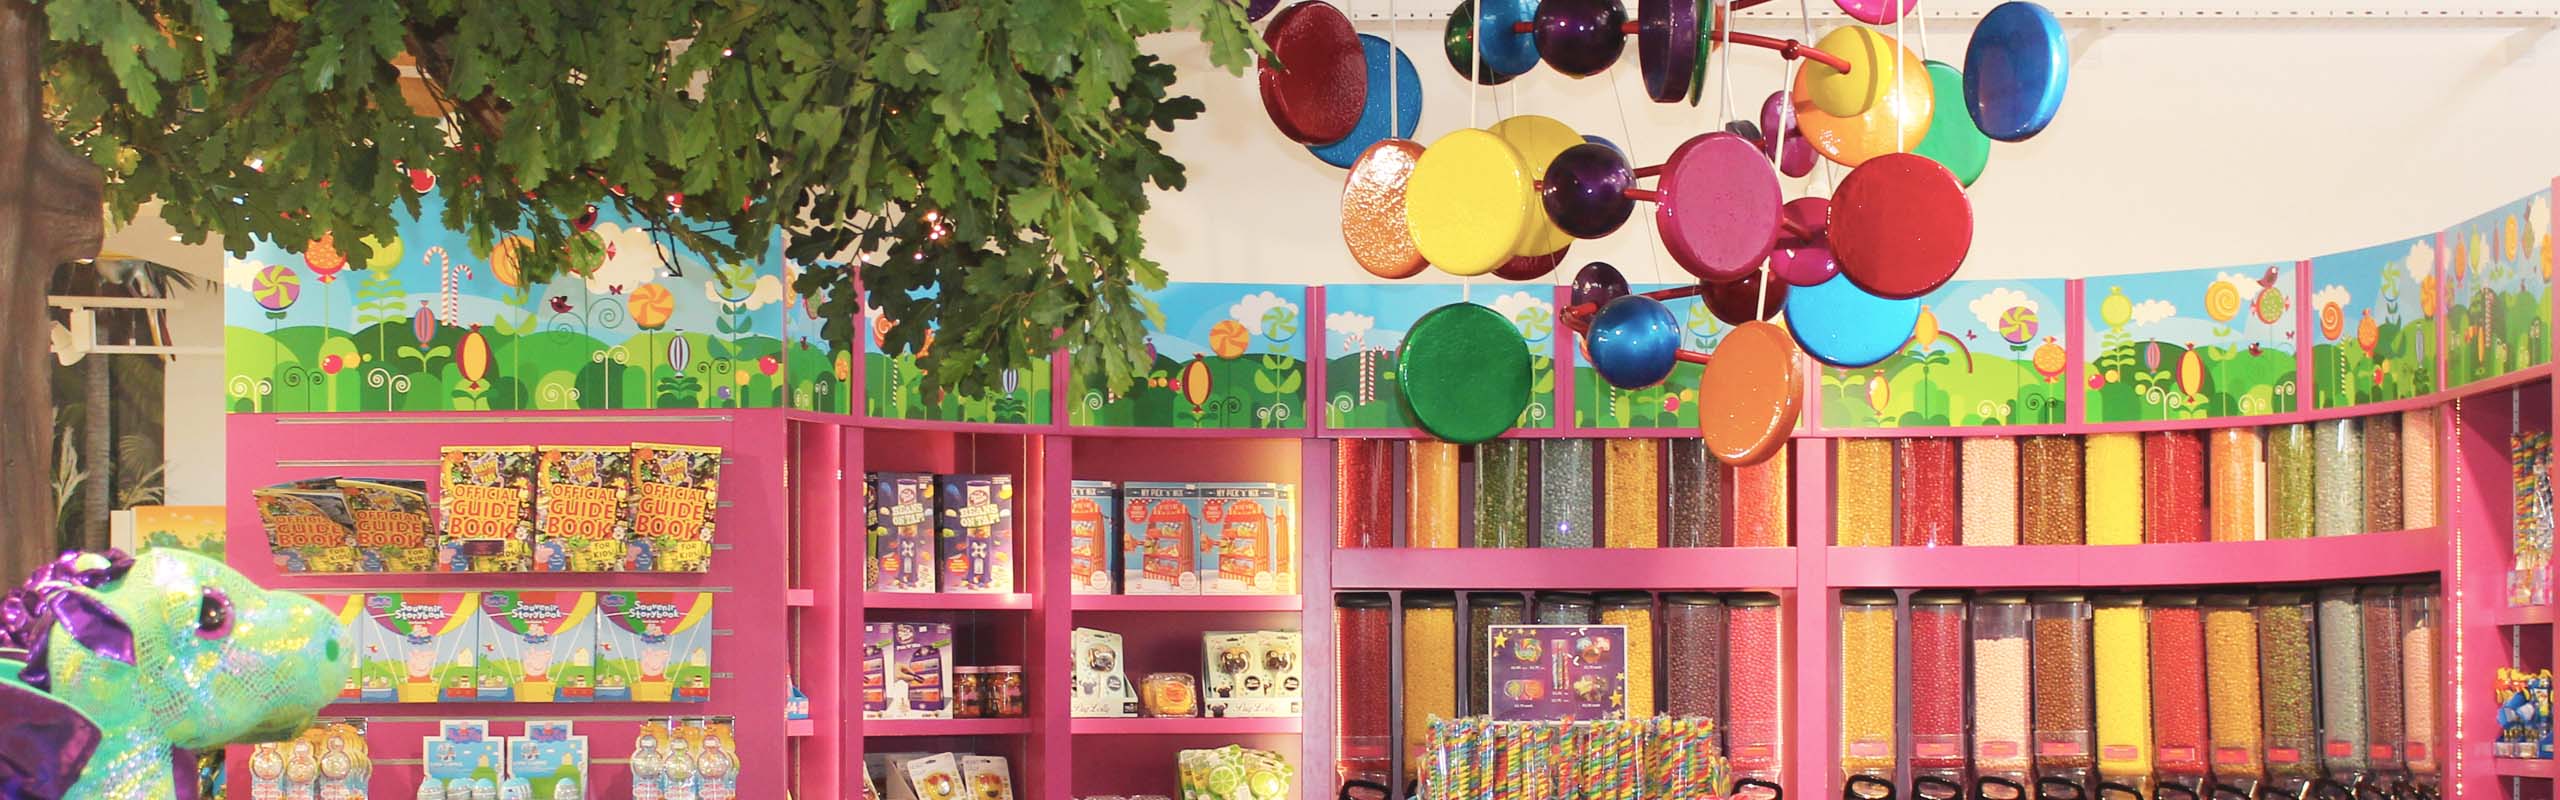 Paultons Park Toy Shop